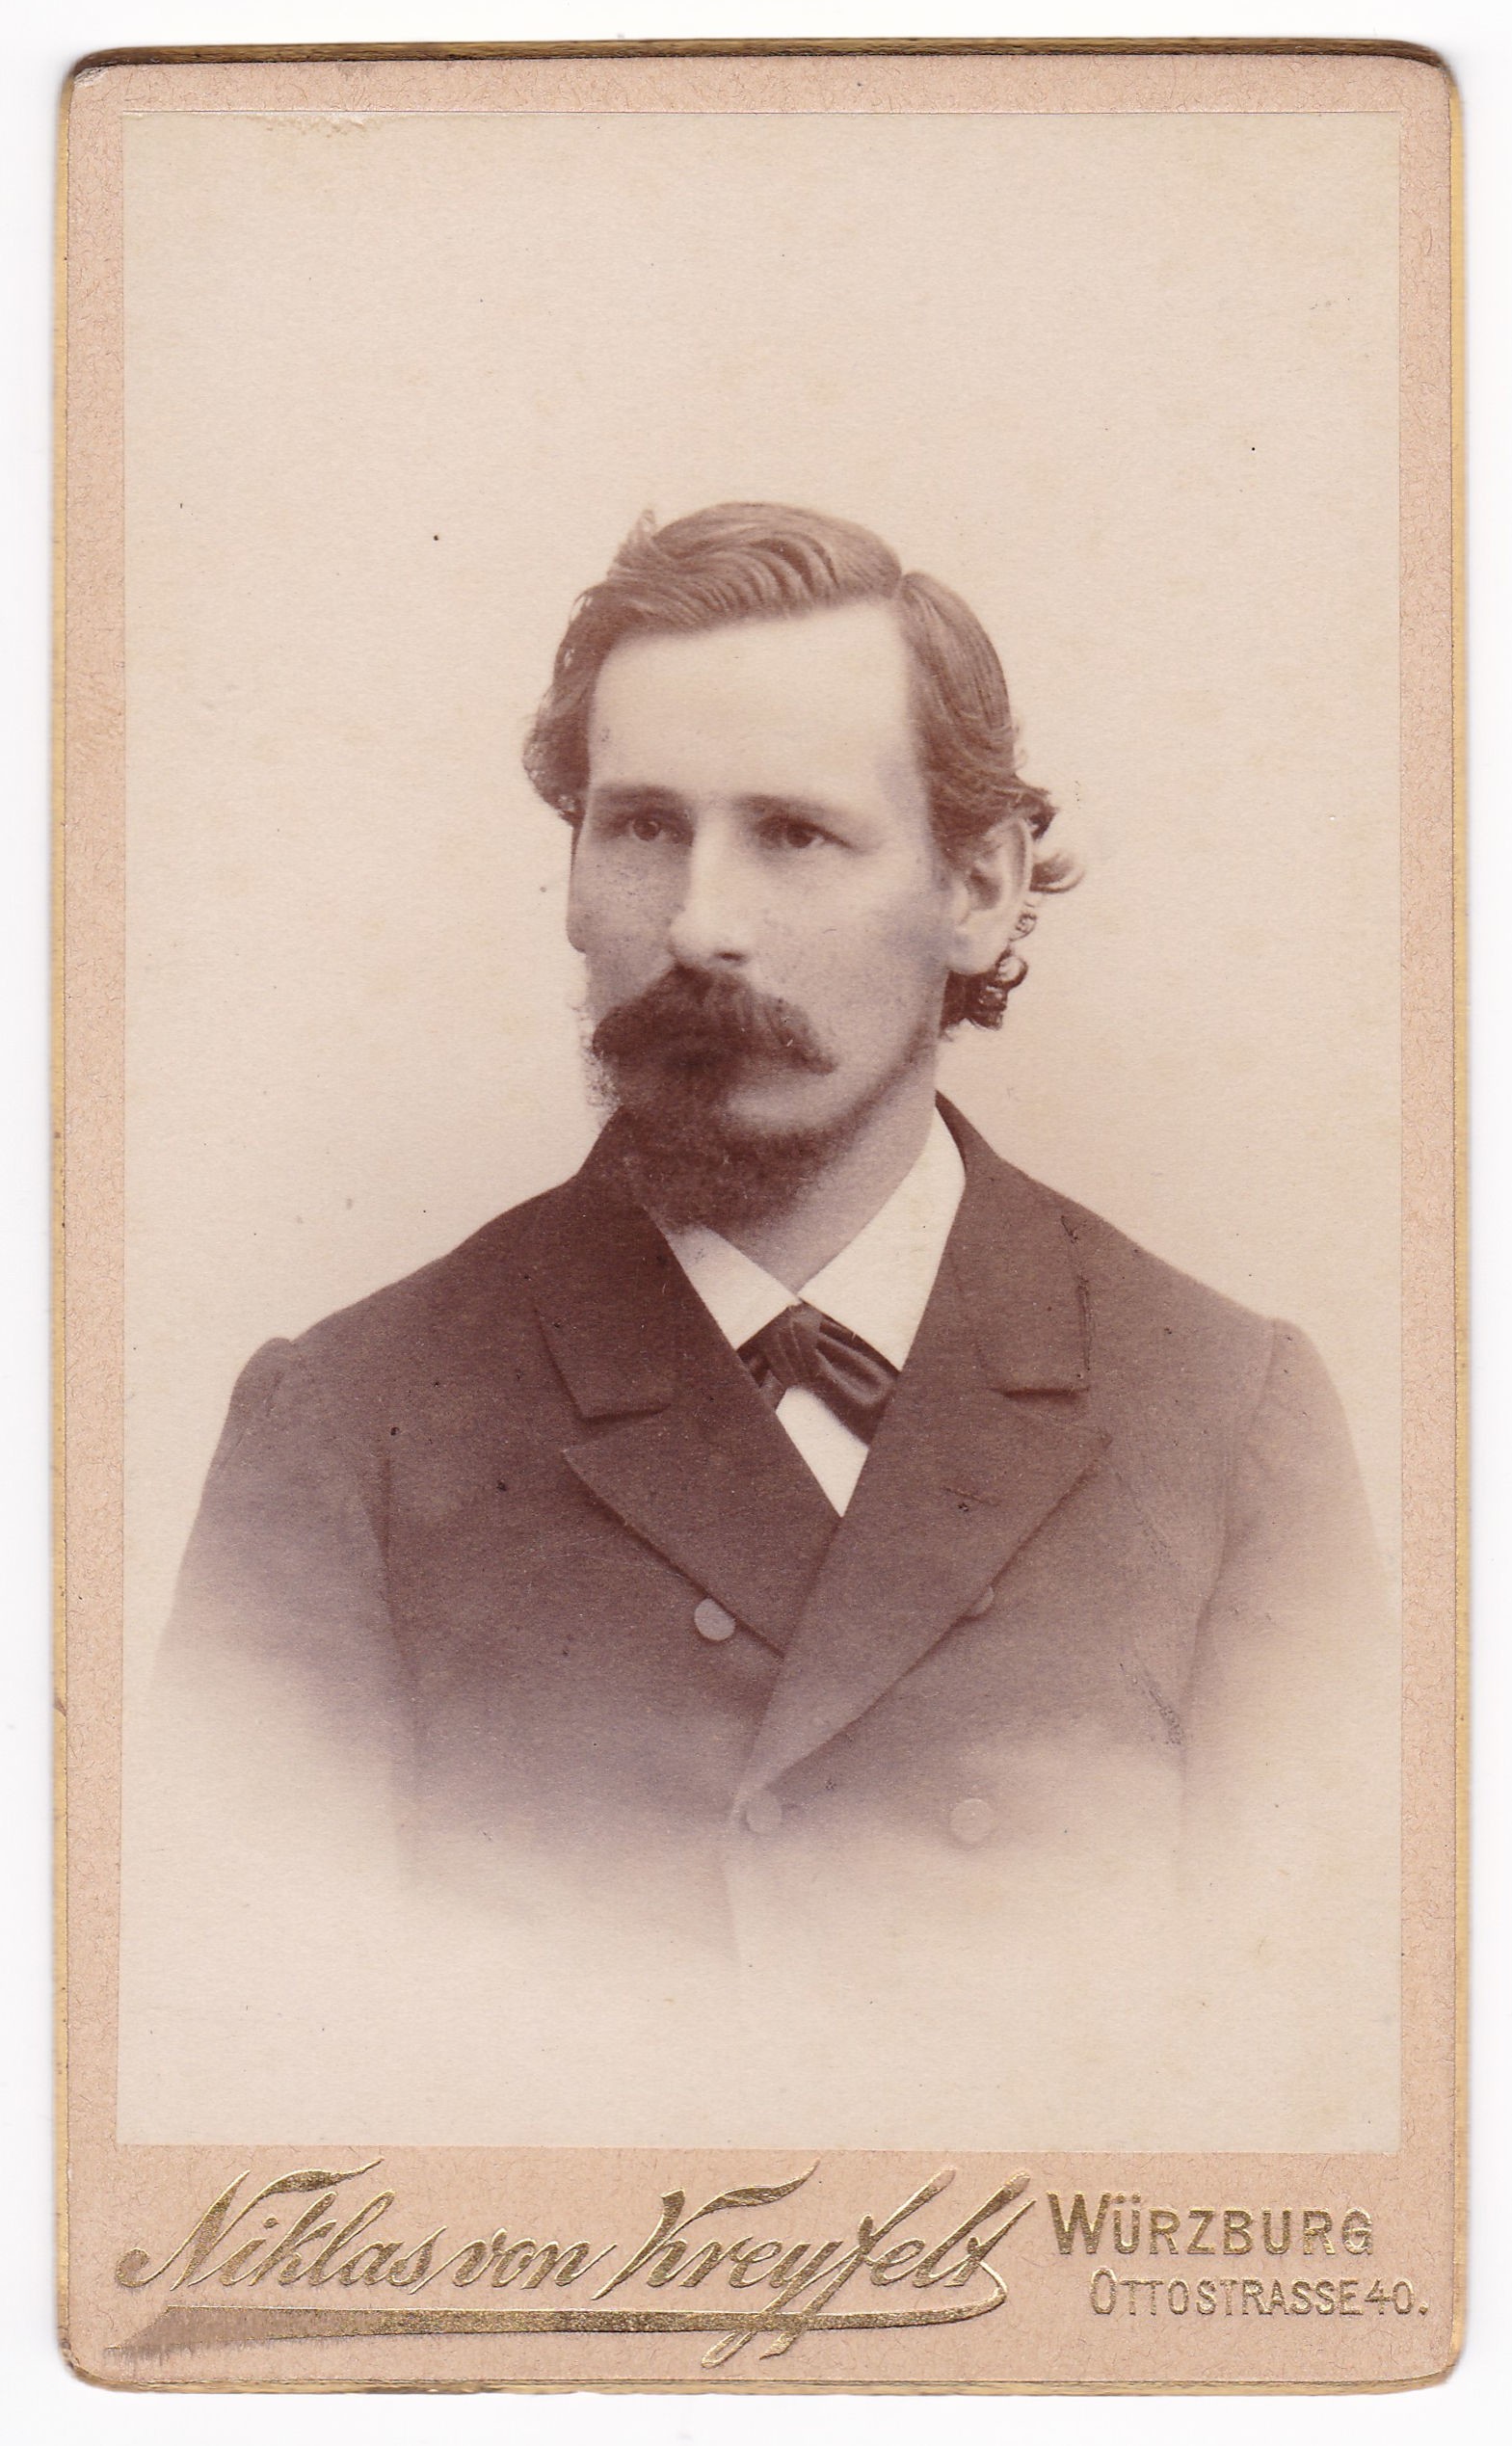 Ludwig Zehnder (1890-1892), 88087 p (DRM CC BY-NC-SA)